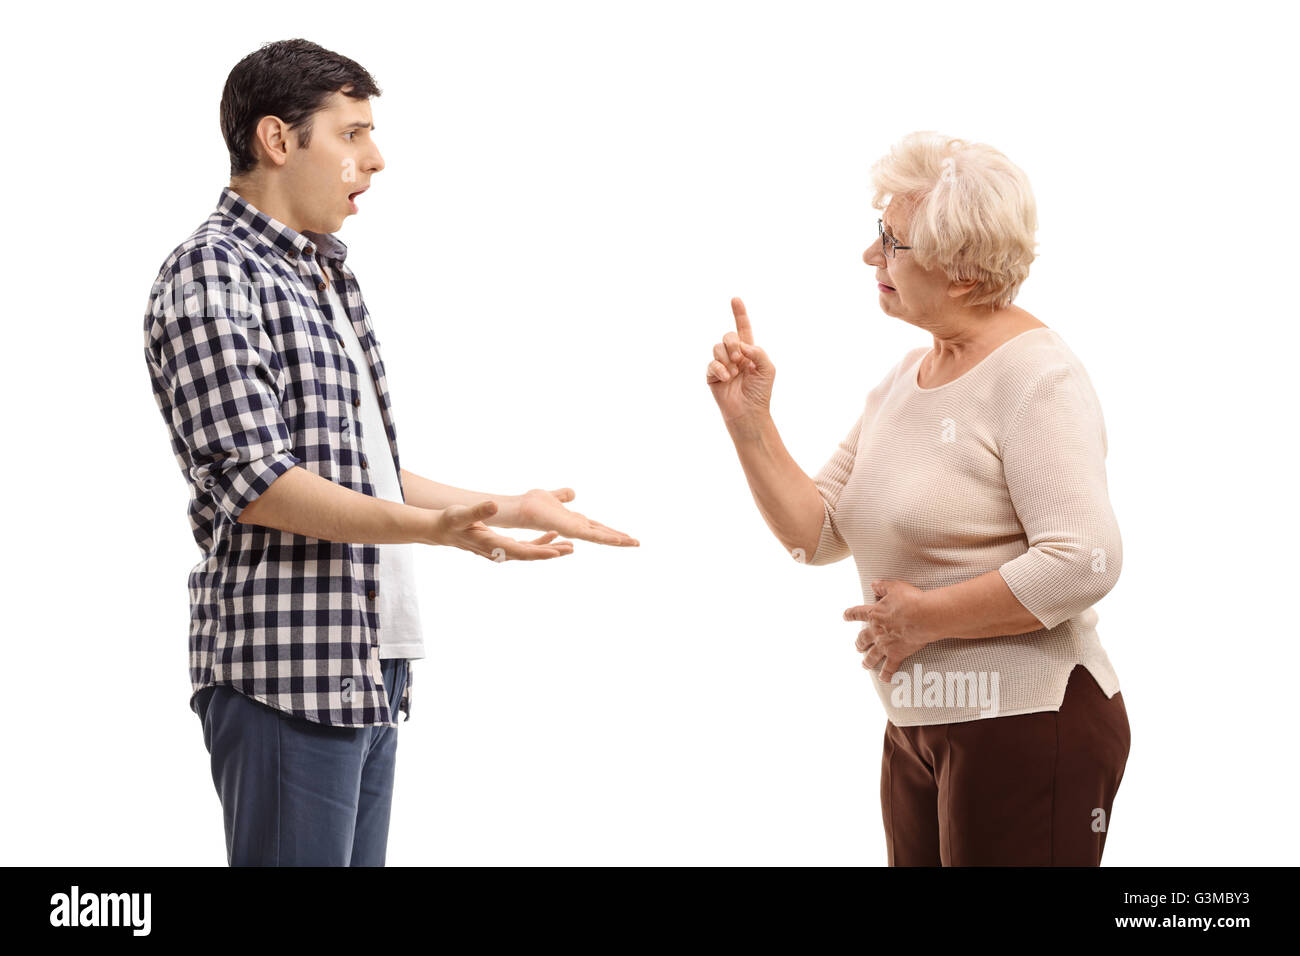 Studioaufnahme eines jungen Mannes argumentieren mit einer reifen Frau isoliert auf weißem Hintergrund Stockfoto